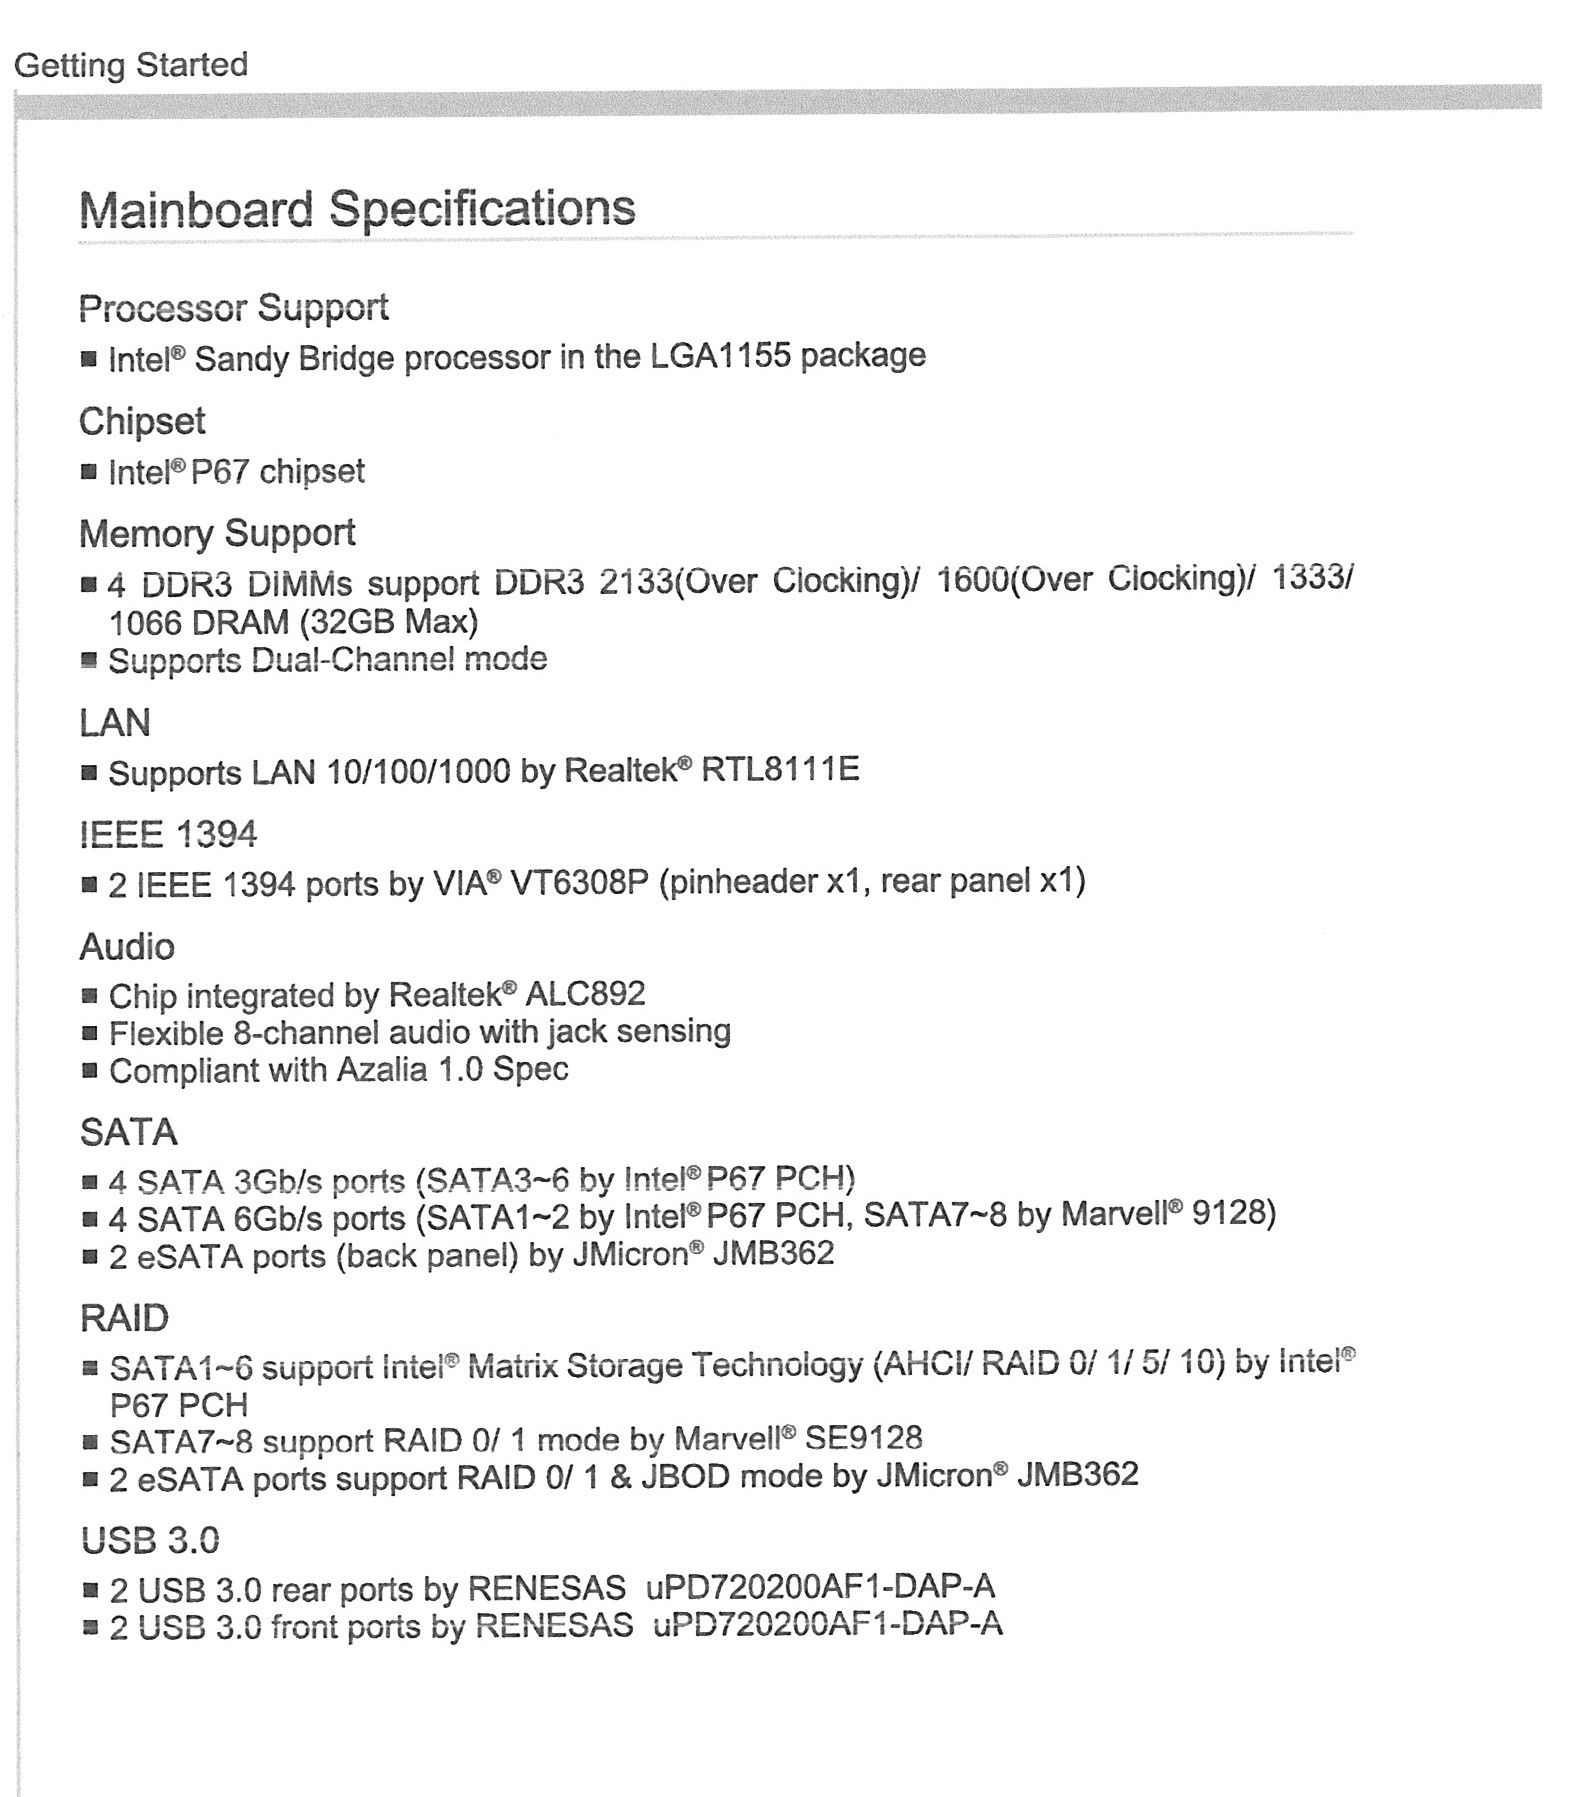 MSI MS 7681 P 67 VER. 3.2 Mainboard Motherboard Gigabit LAN LGA1155